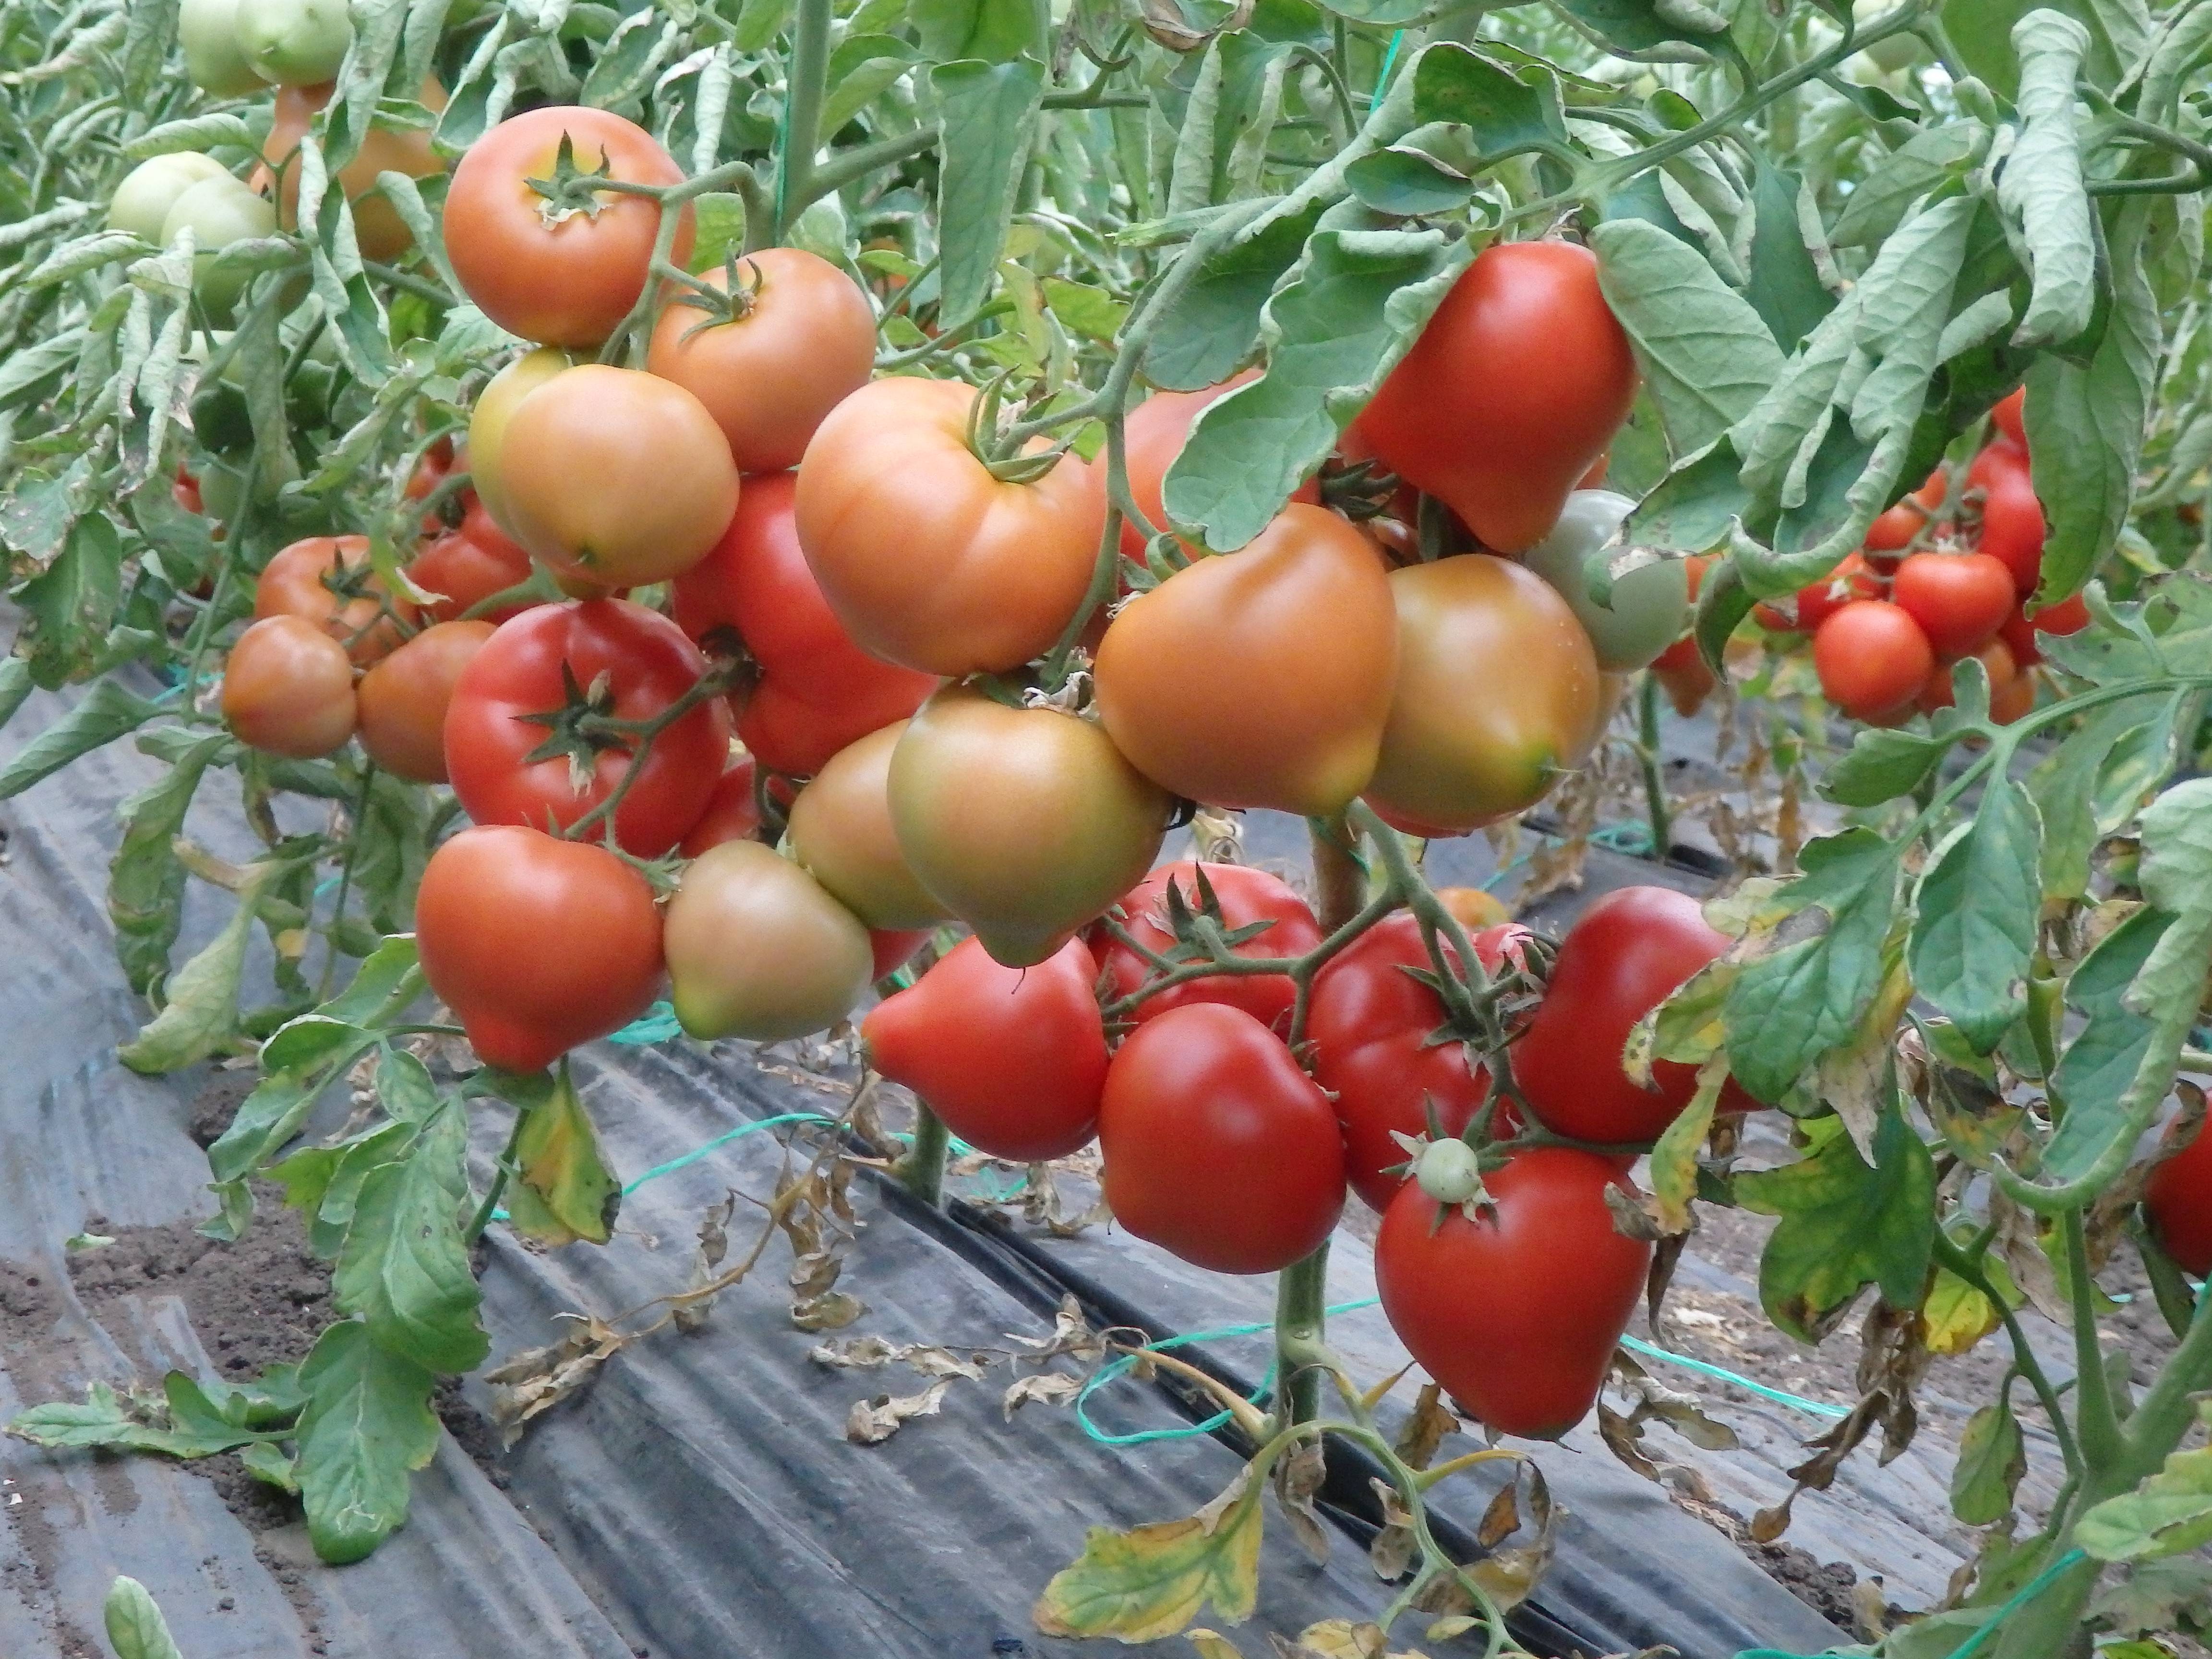 Томат ралли: характеристика и описание сорта, урожайность с фото